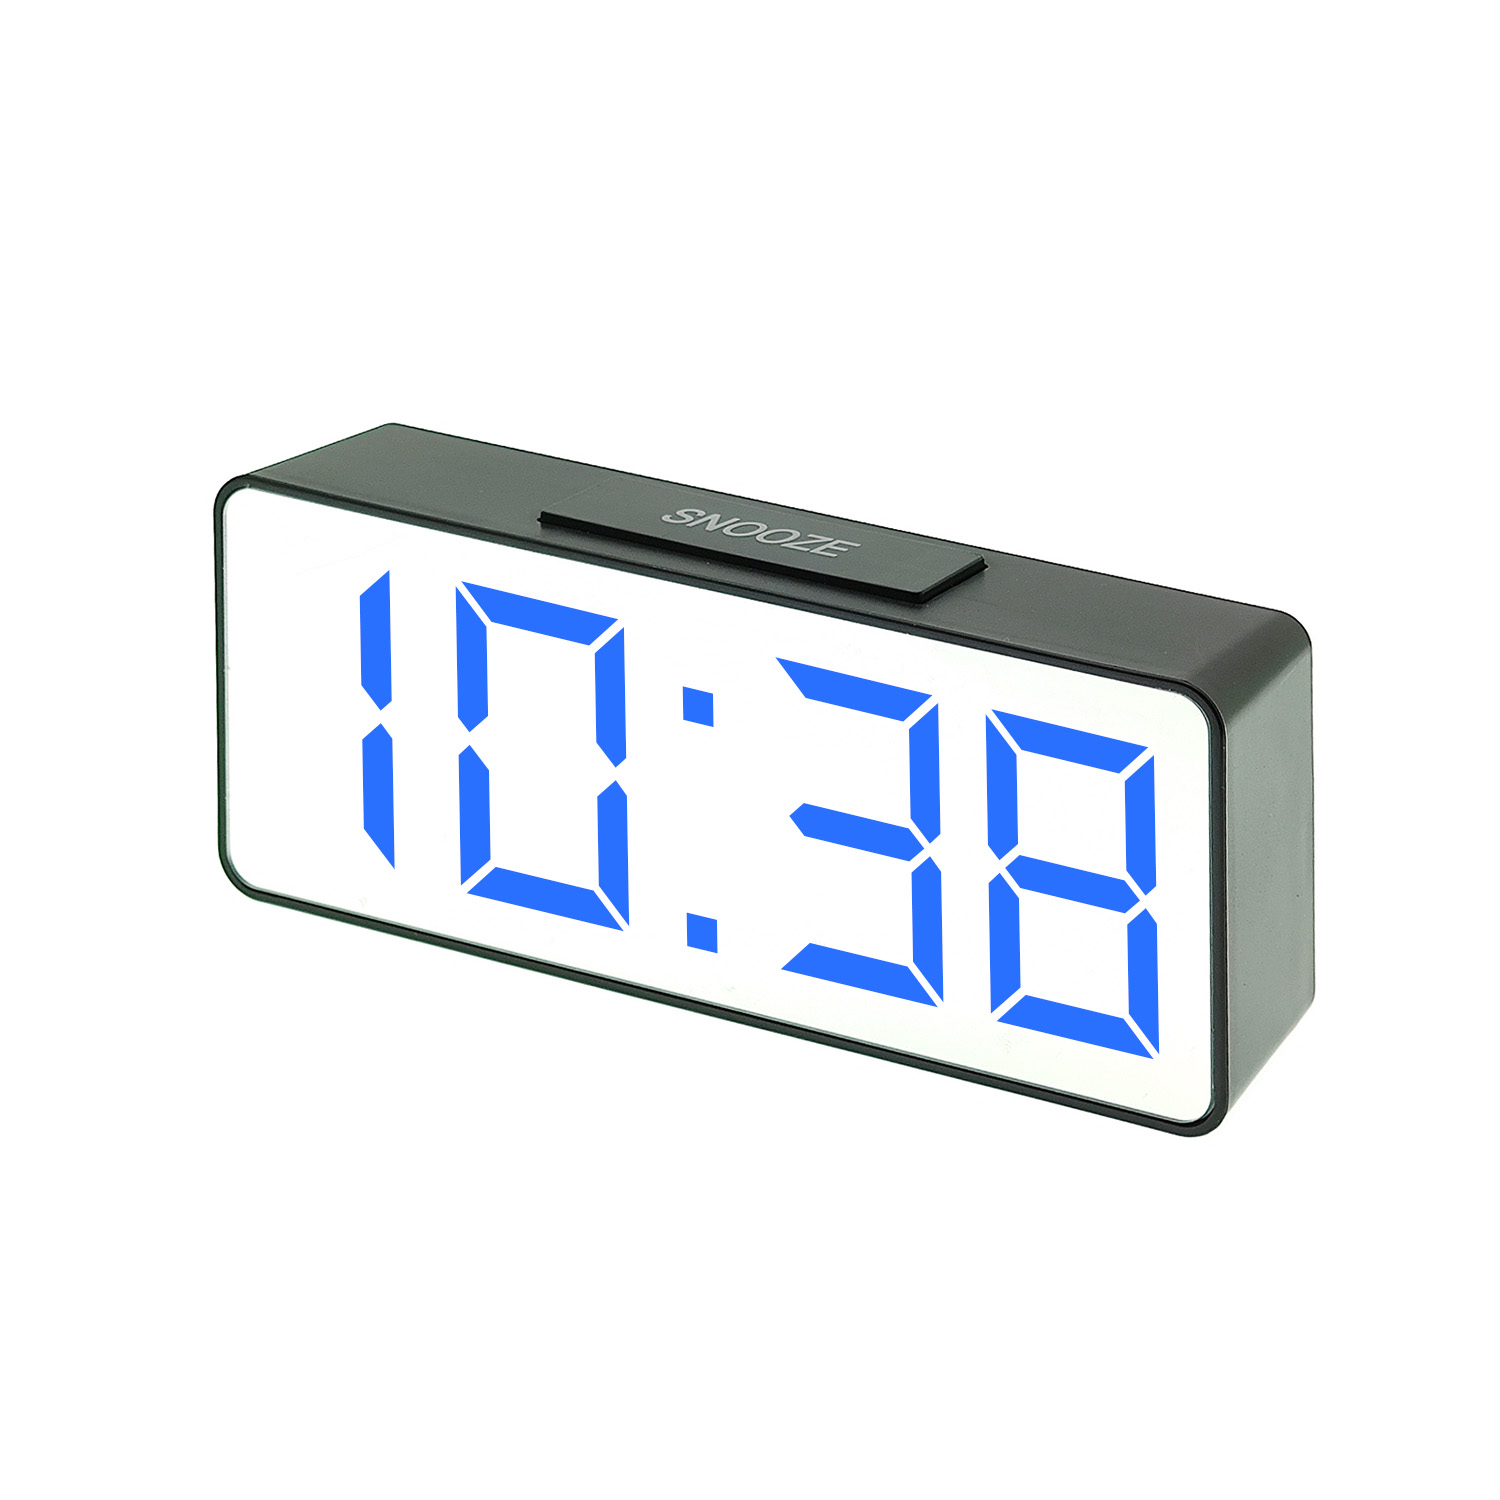 часы настольные VST-886/5 (синие) зеркальные+дата+температура  (без блока, питание от USB)